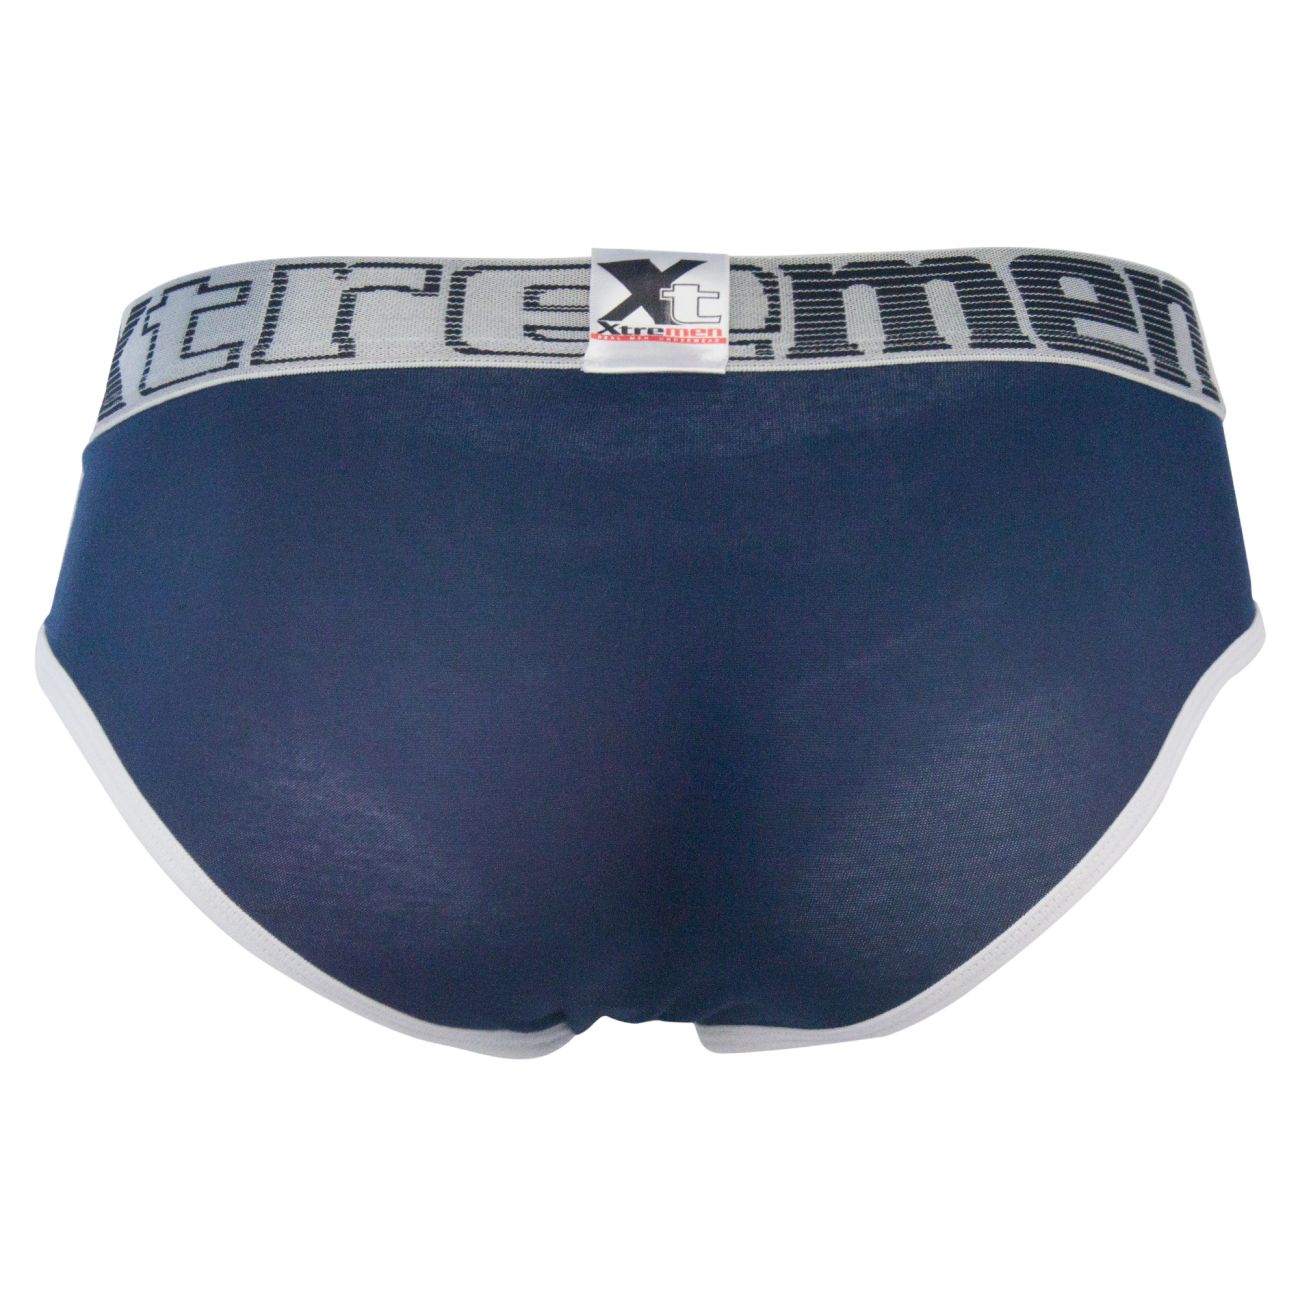 Men's Underwear Briefs | 3-Pack Cotton Briefs | Yummy Look